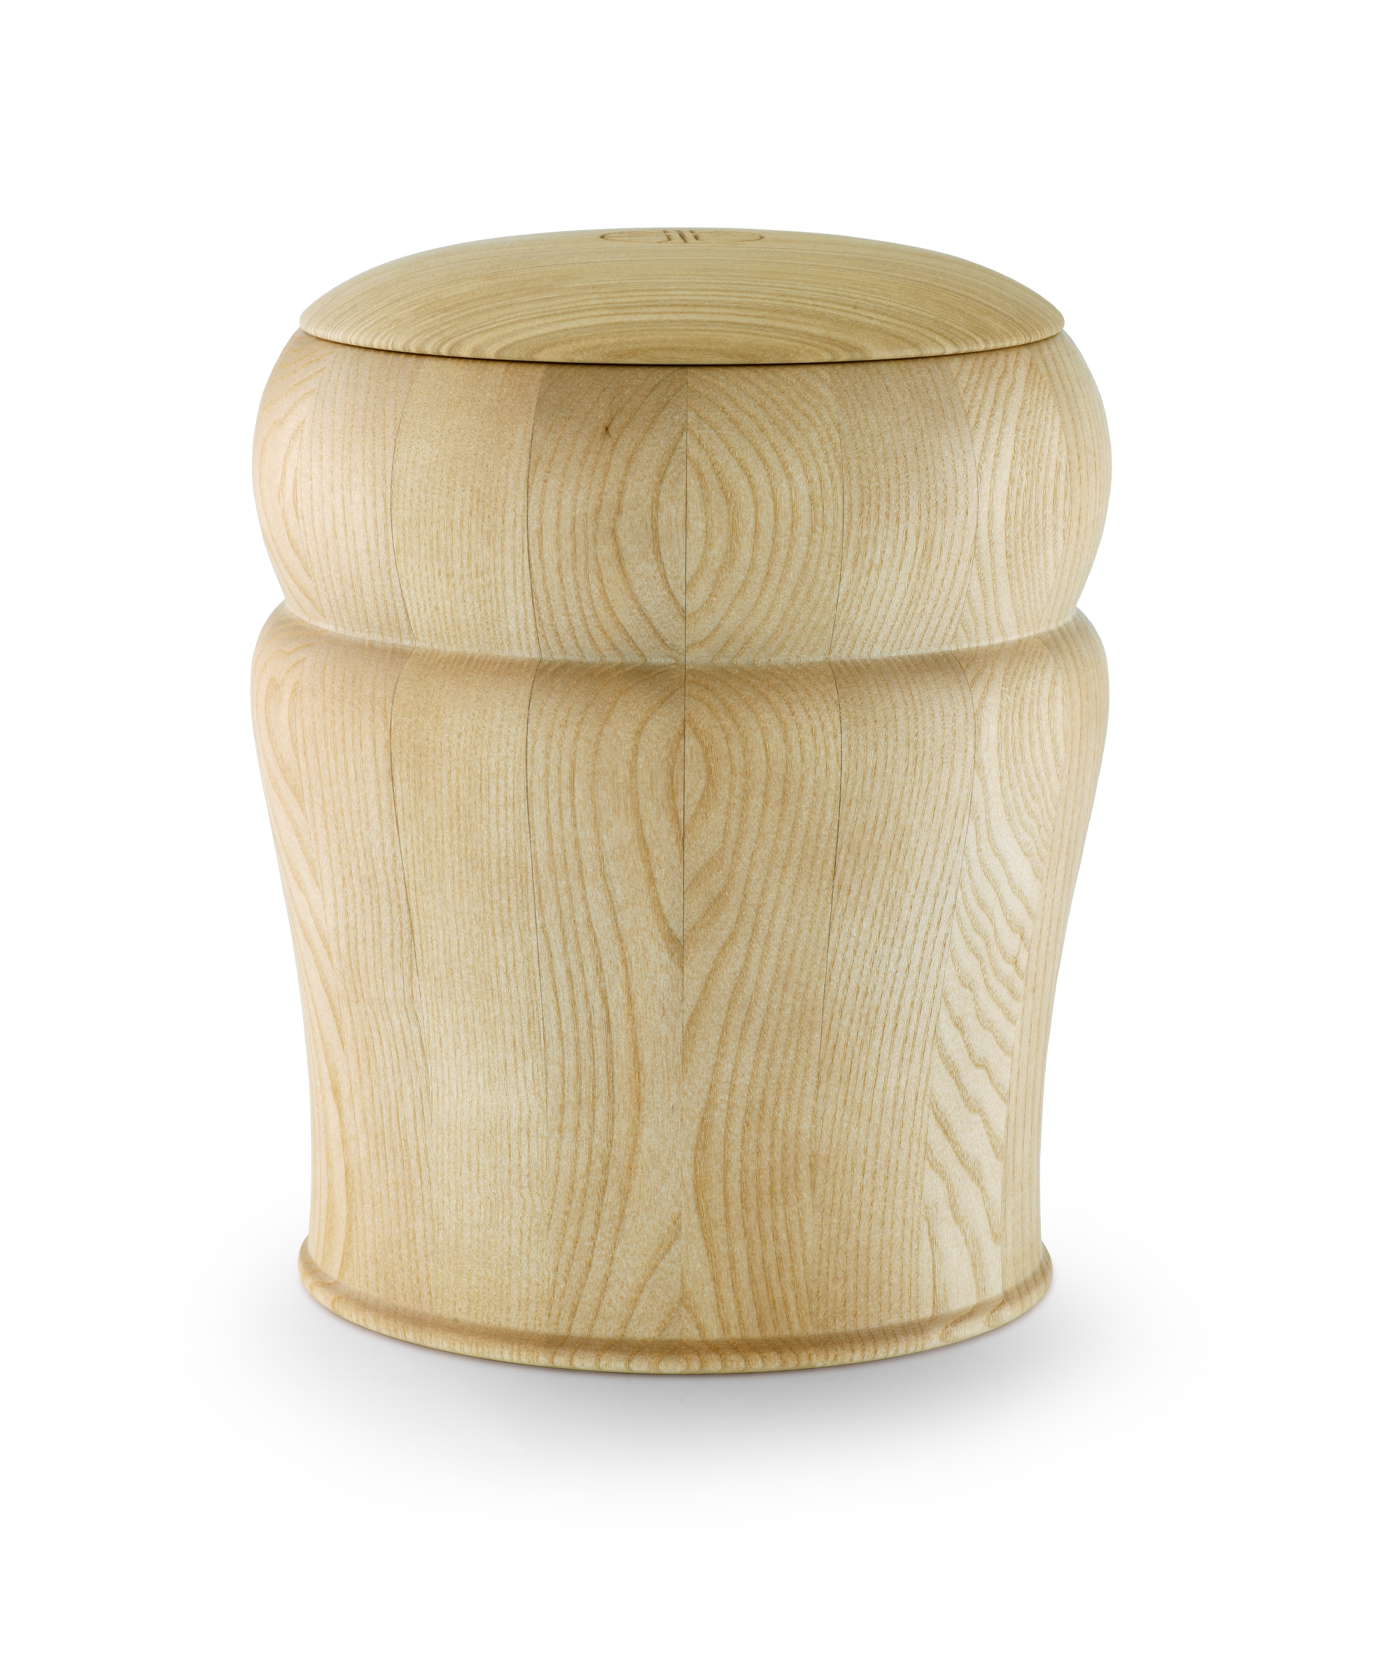 Völsing urn olive ash wood